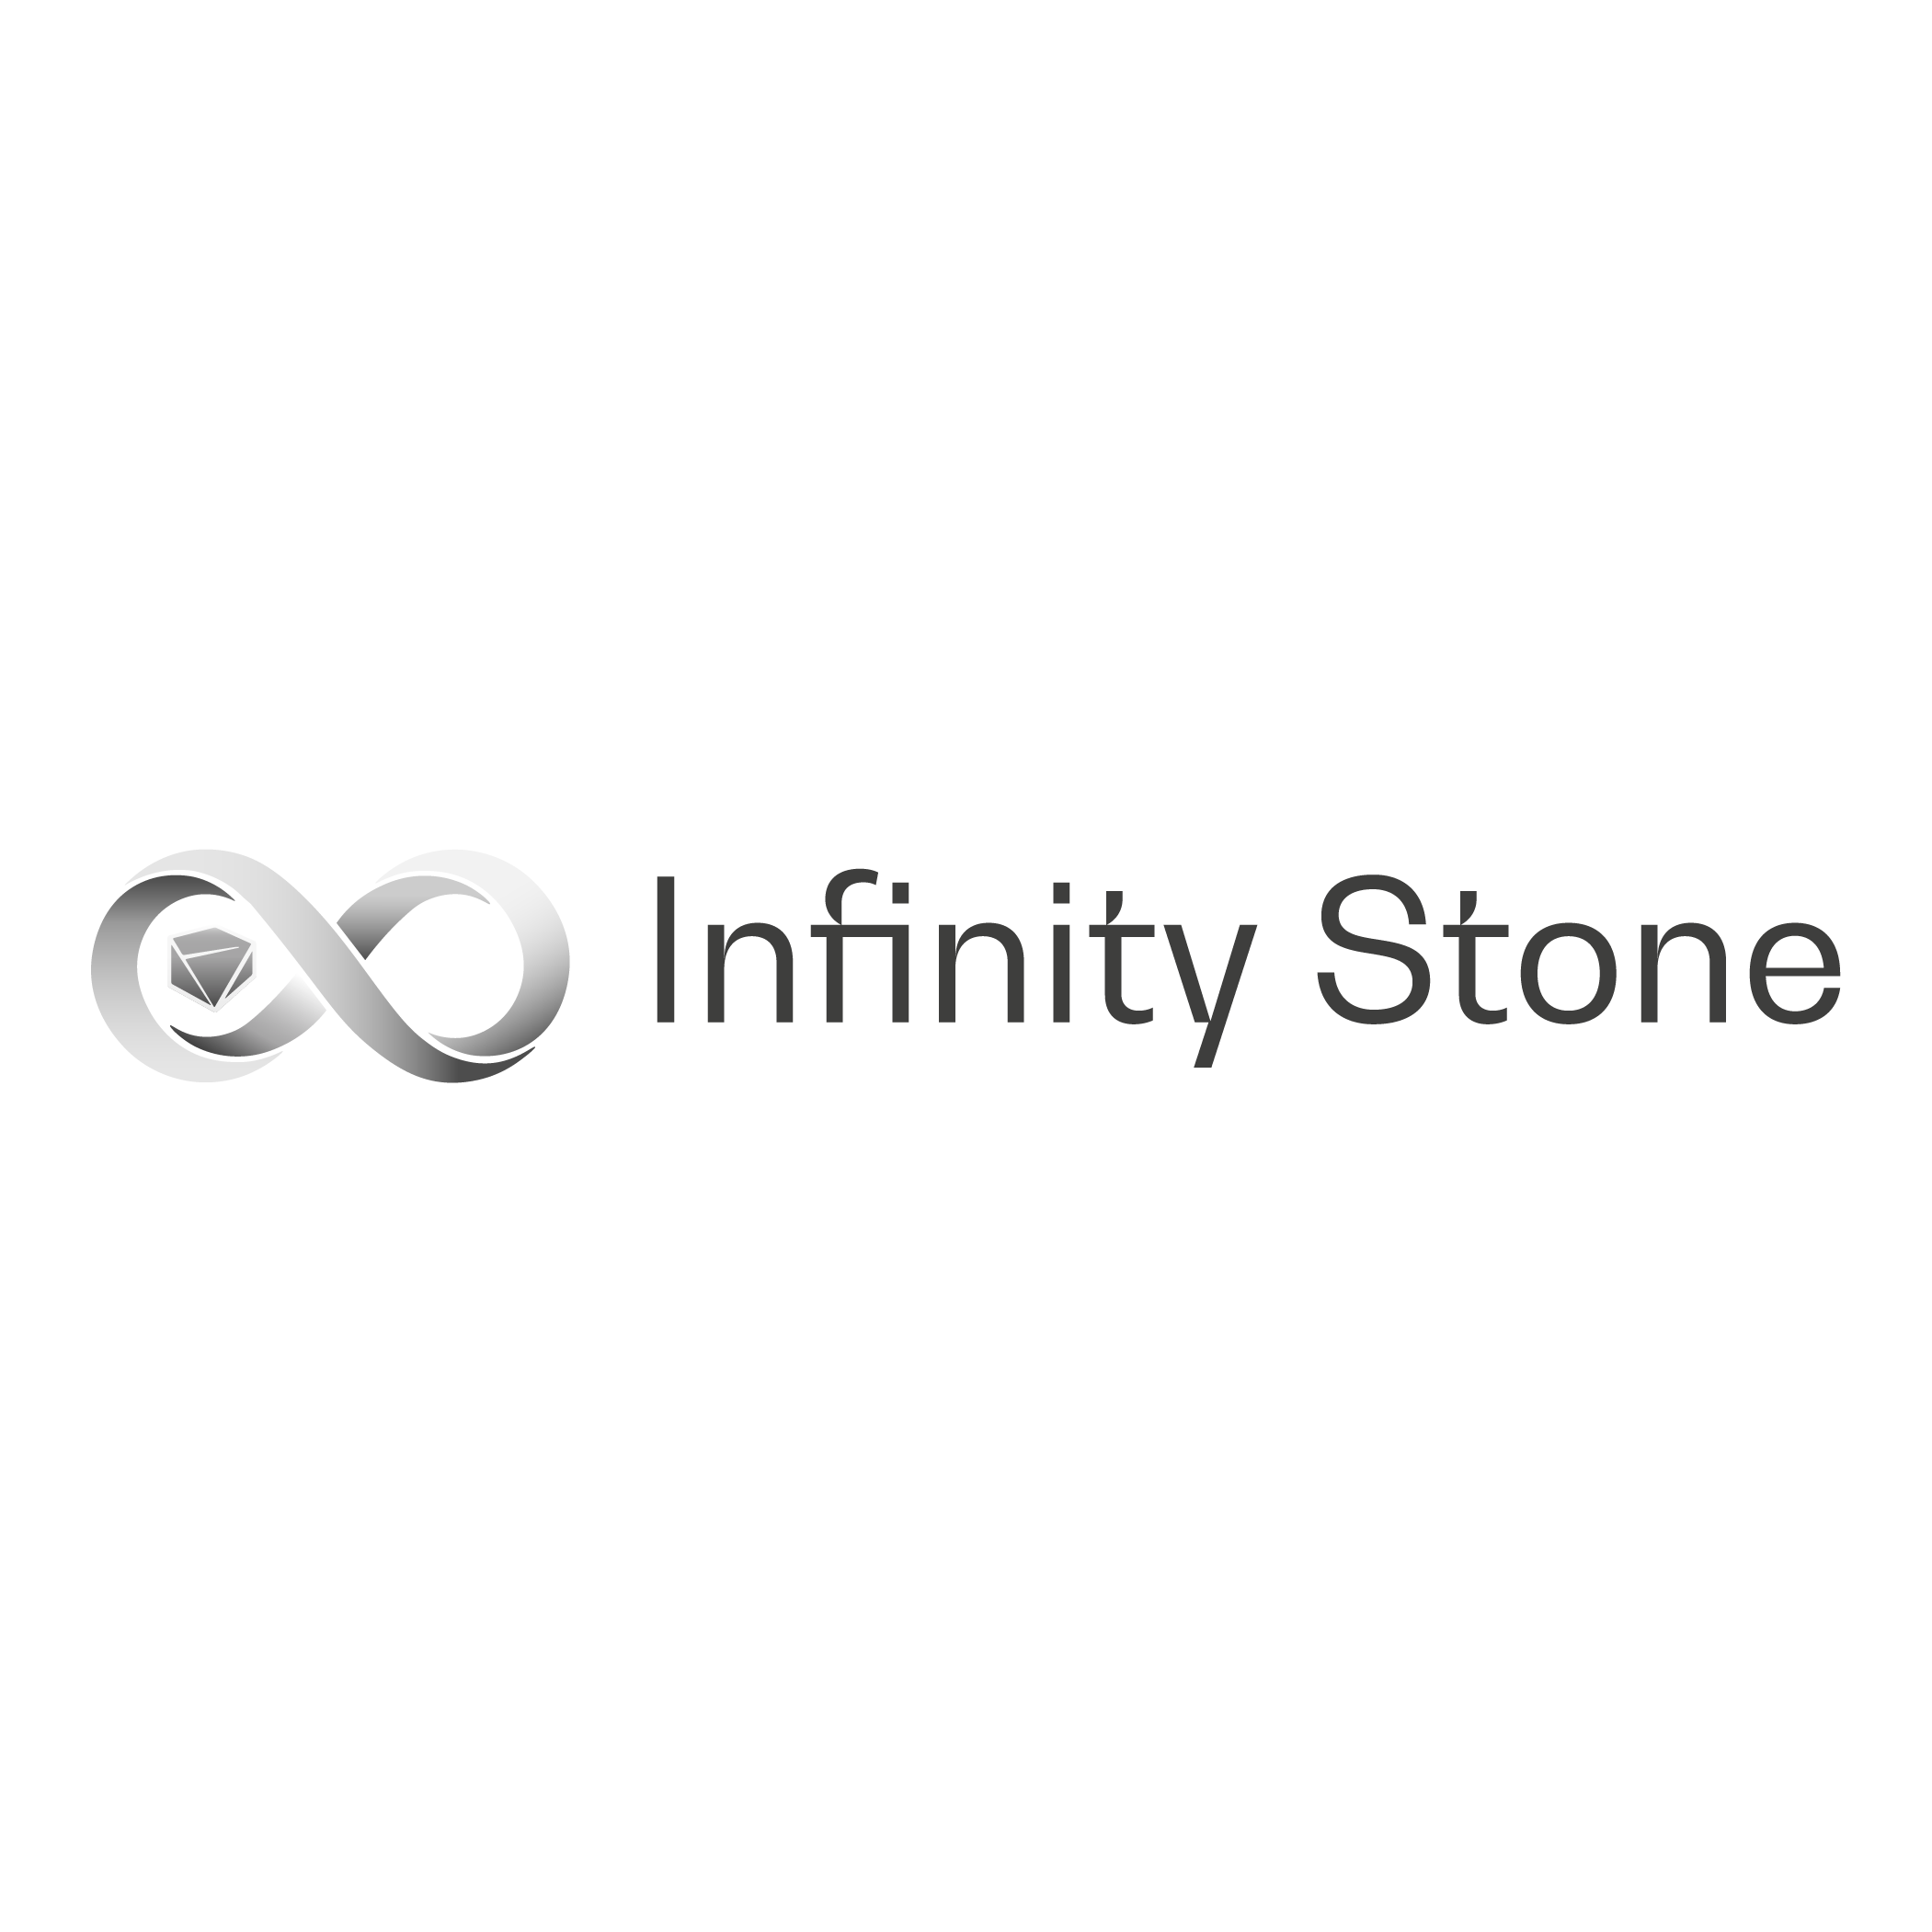 Infinity Stone Ventures Logo